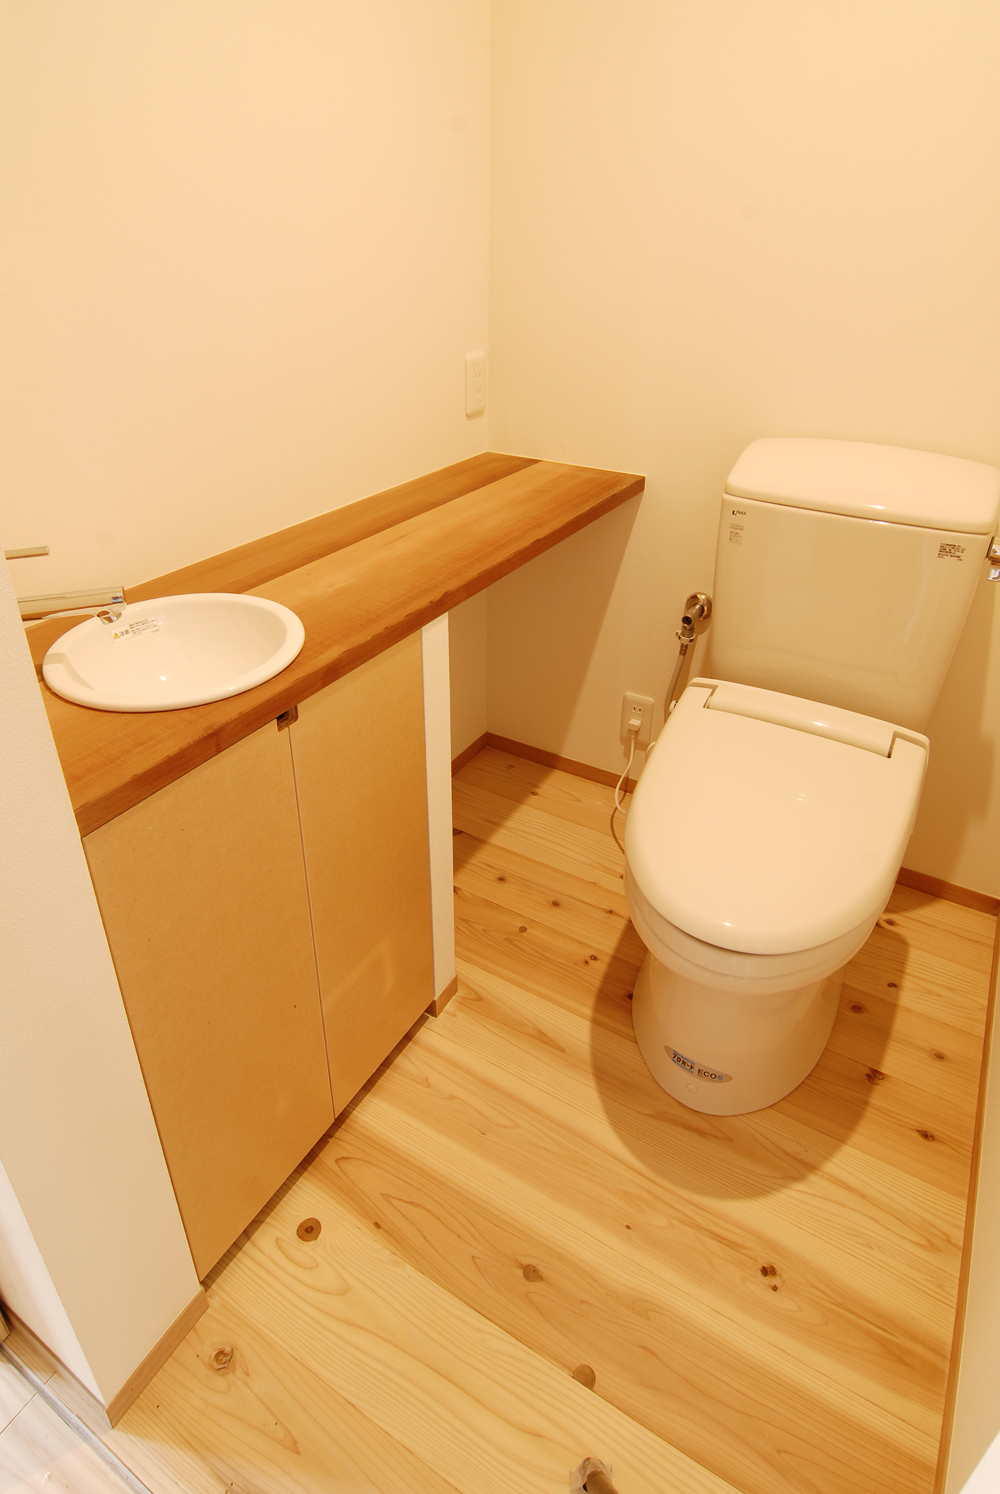 木目と珪藻土の組み合わせが優しい雰囲気のトイレ